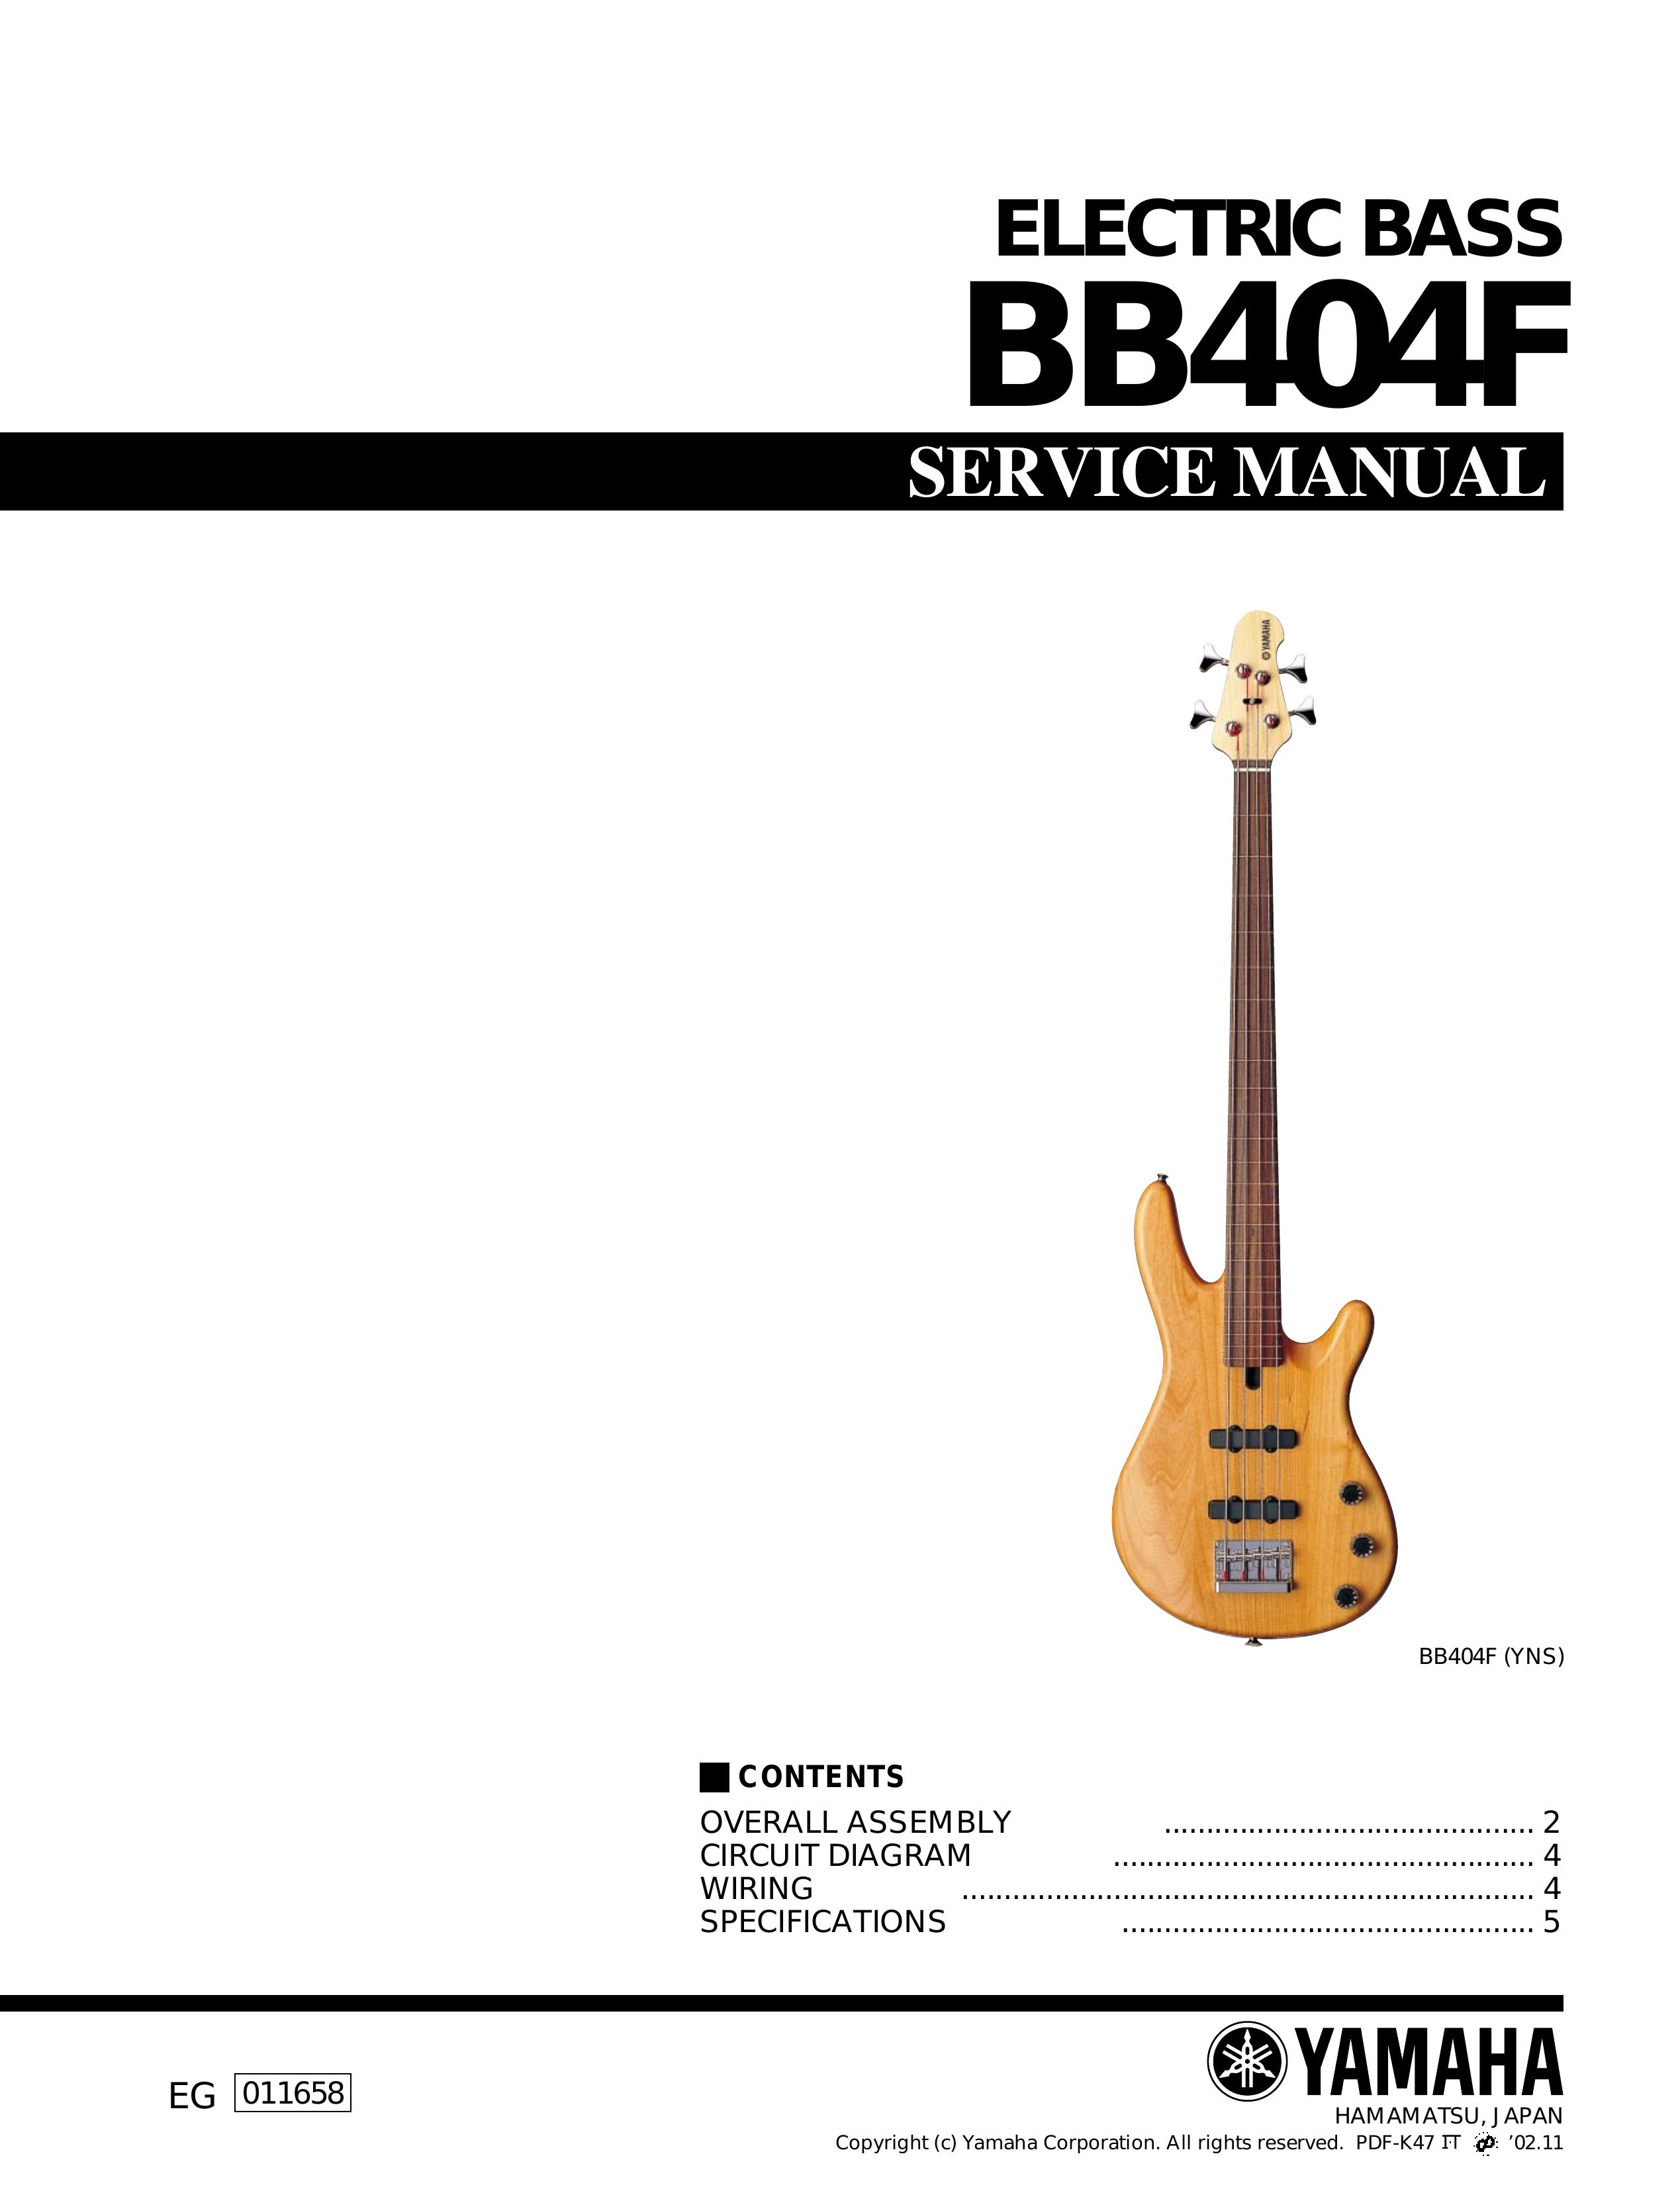 Yamaha bb404f Guitar User Manual